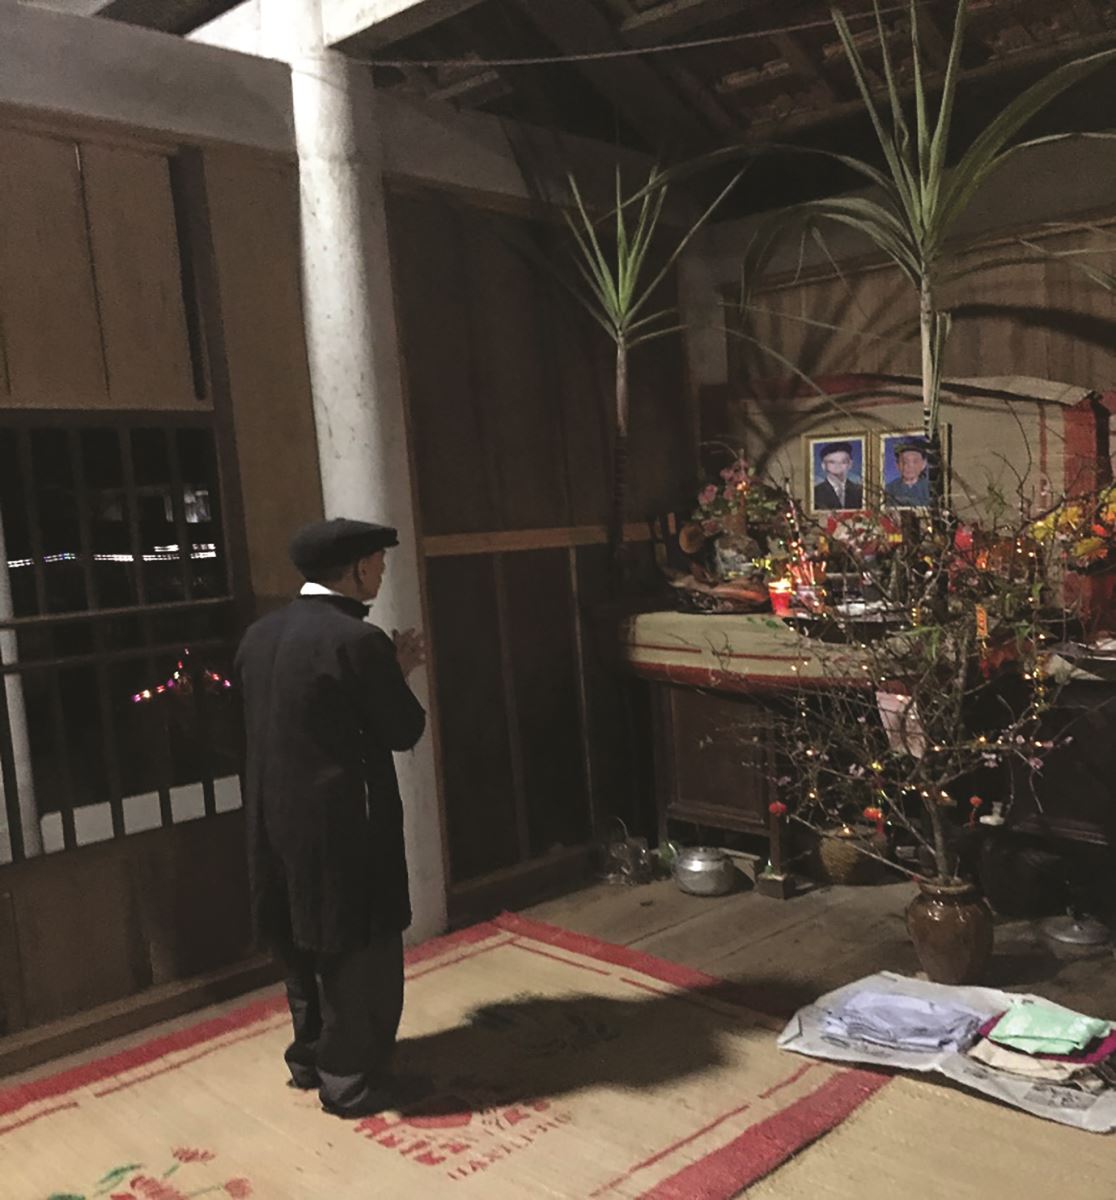 Cây mía trong thực hành nghi lễ của người Tày - Thái: Từ góc nhìn đa chiều